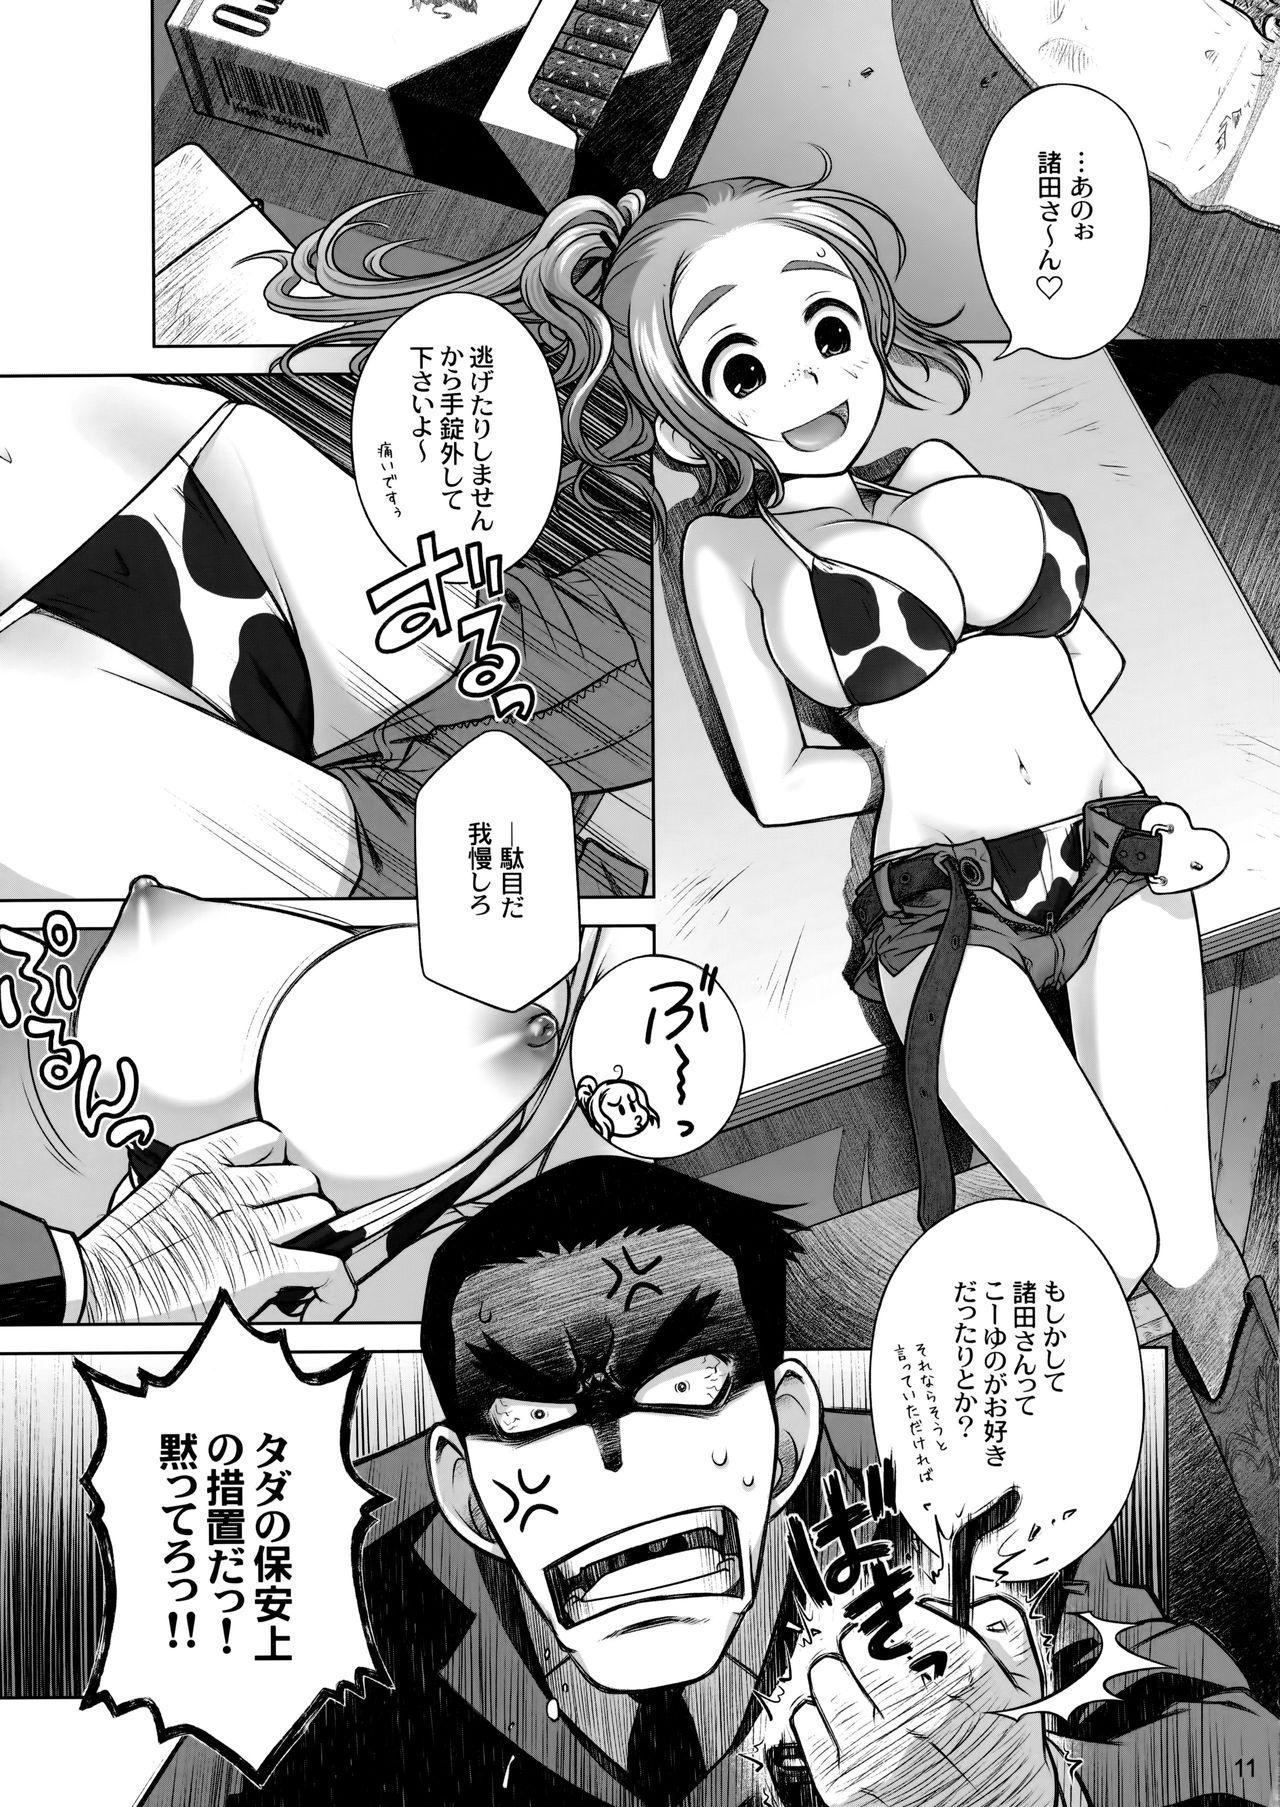 Porra Sorako no Tabi 3 Cop - Page 10